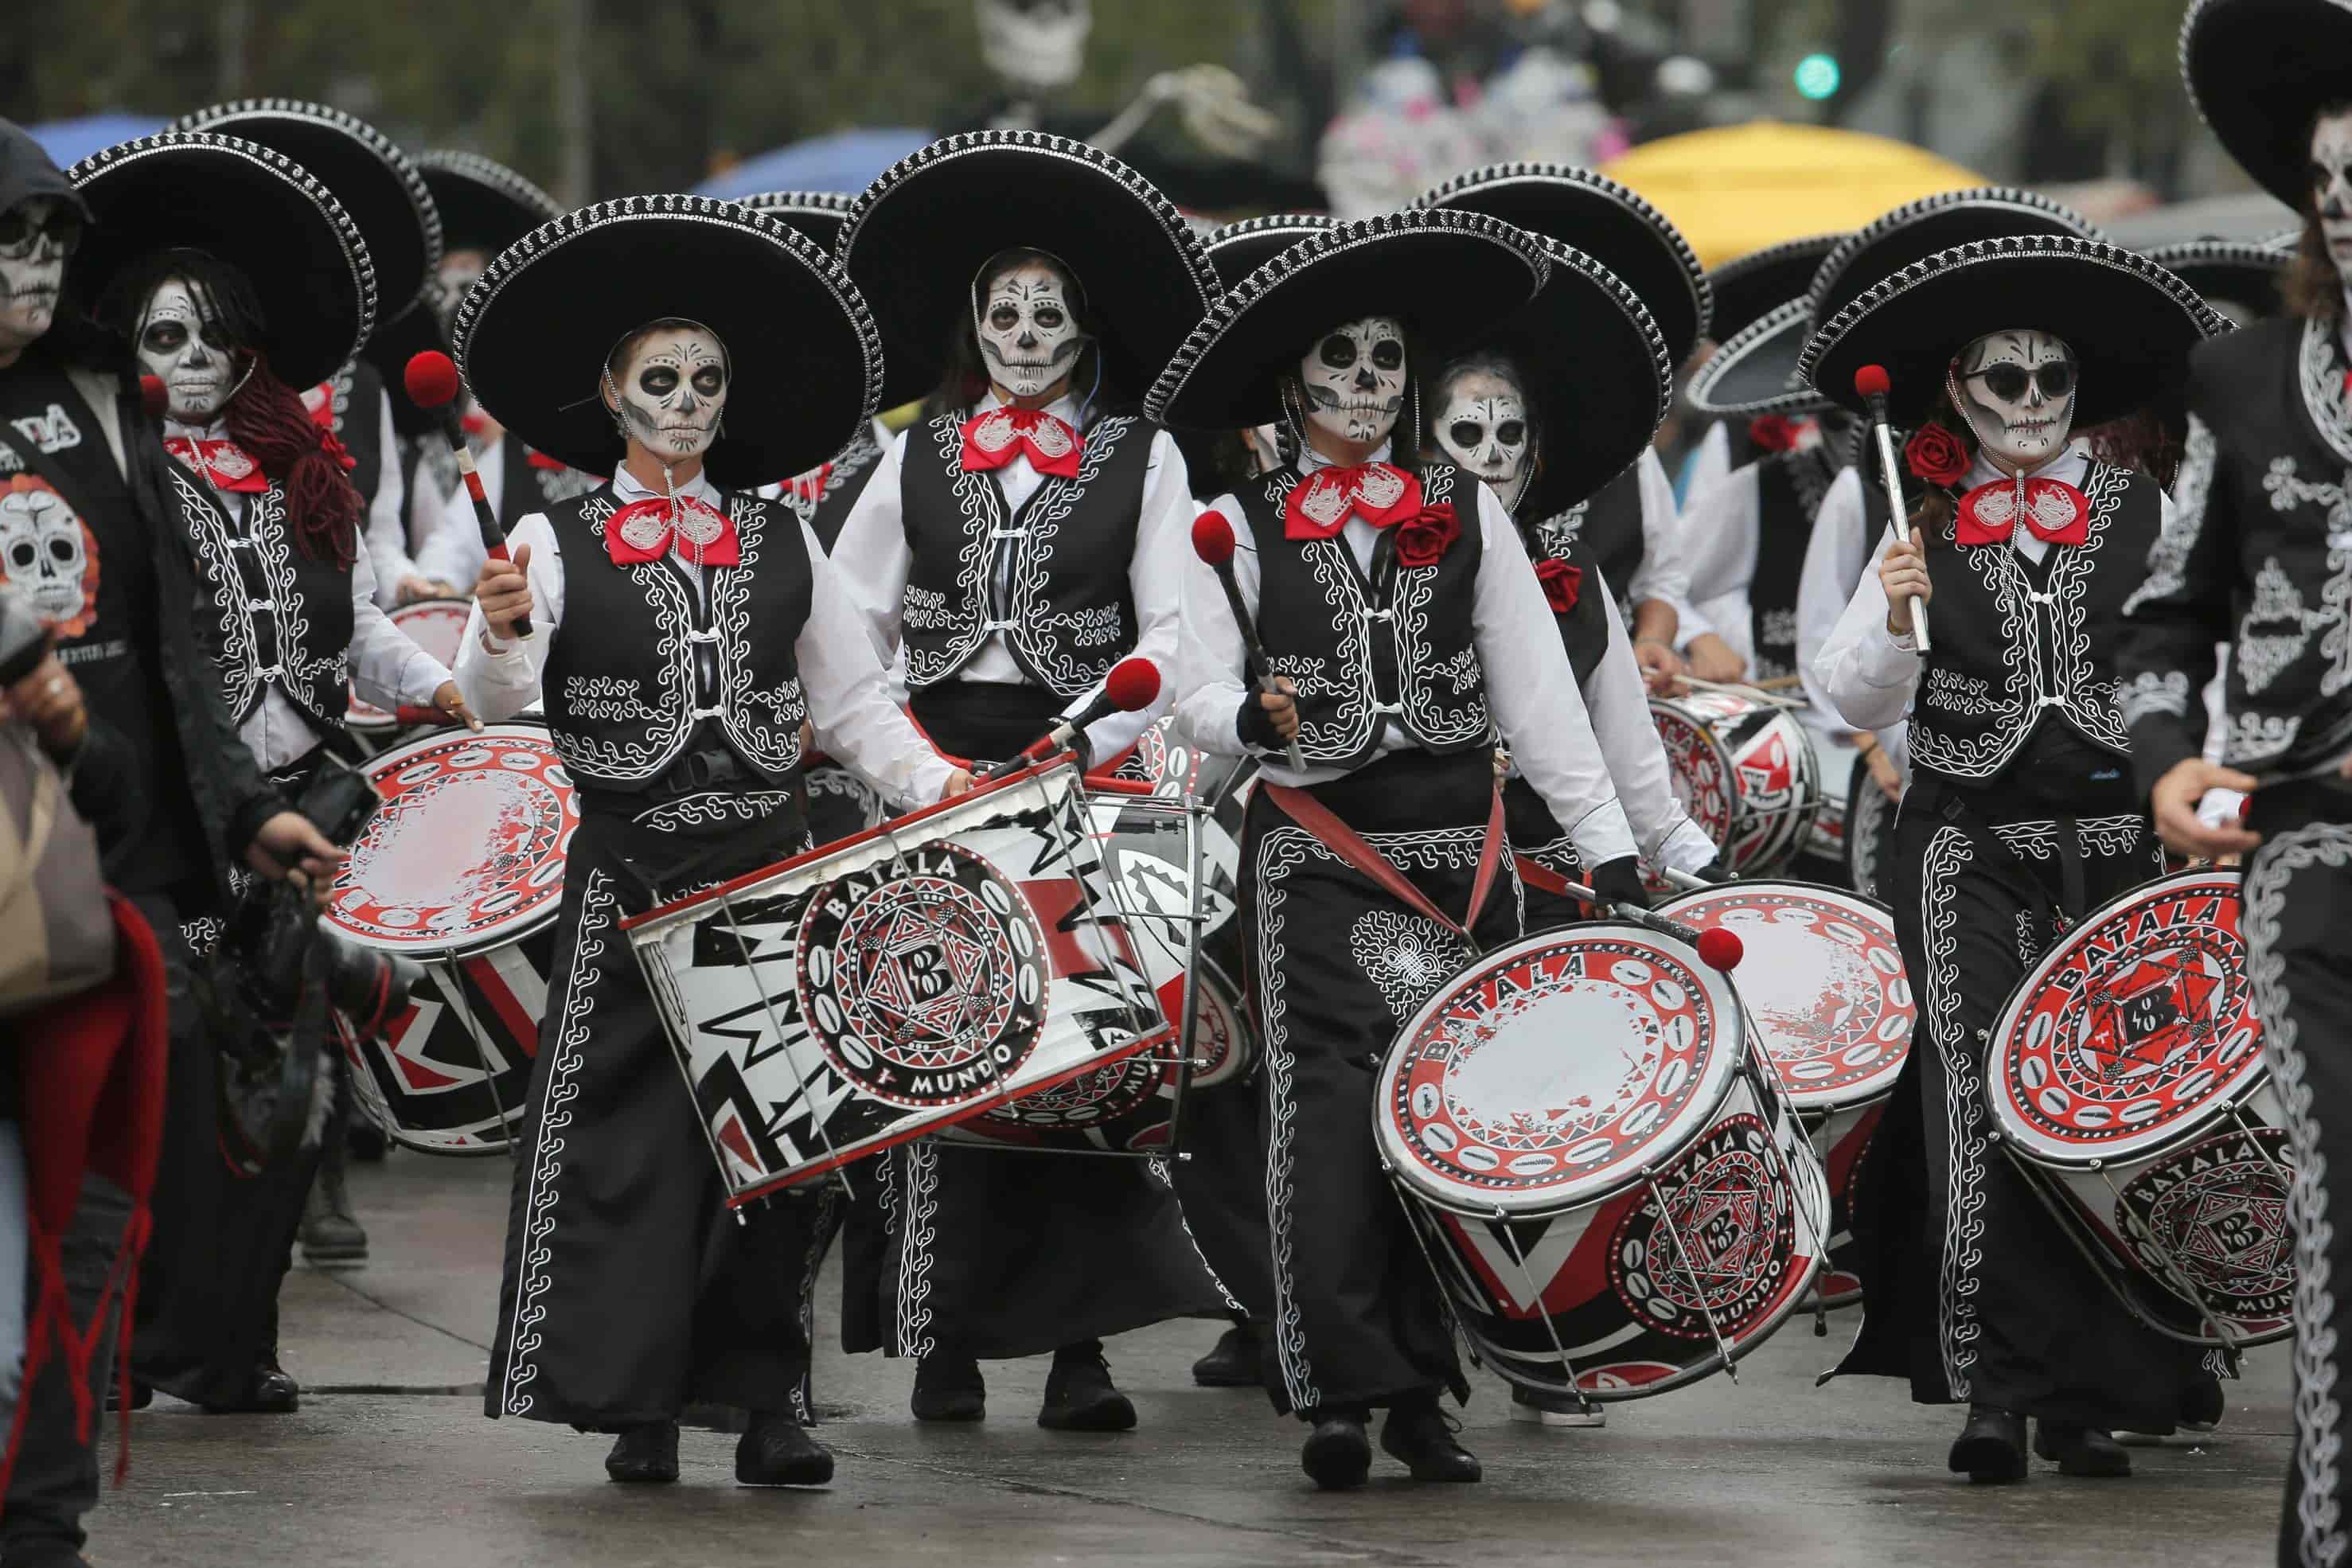 El Mega desfile de Día de Muertos entre calaveras y carros alegóricos